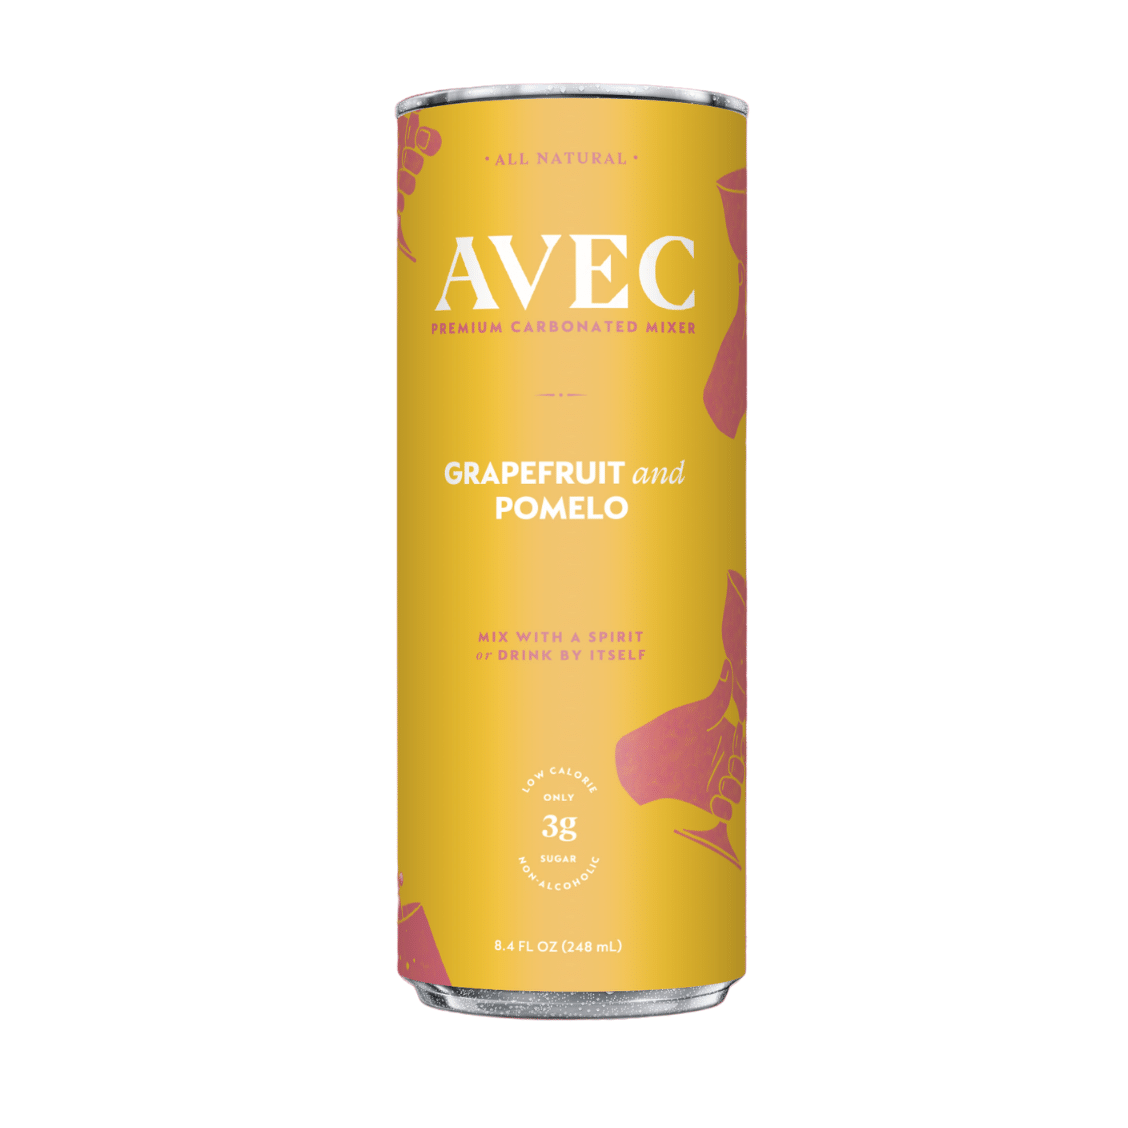 AVEC Grapefruit & Pomelo 4 pack